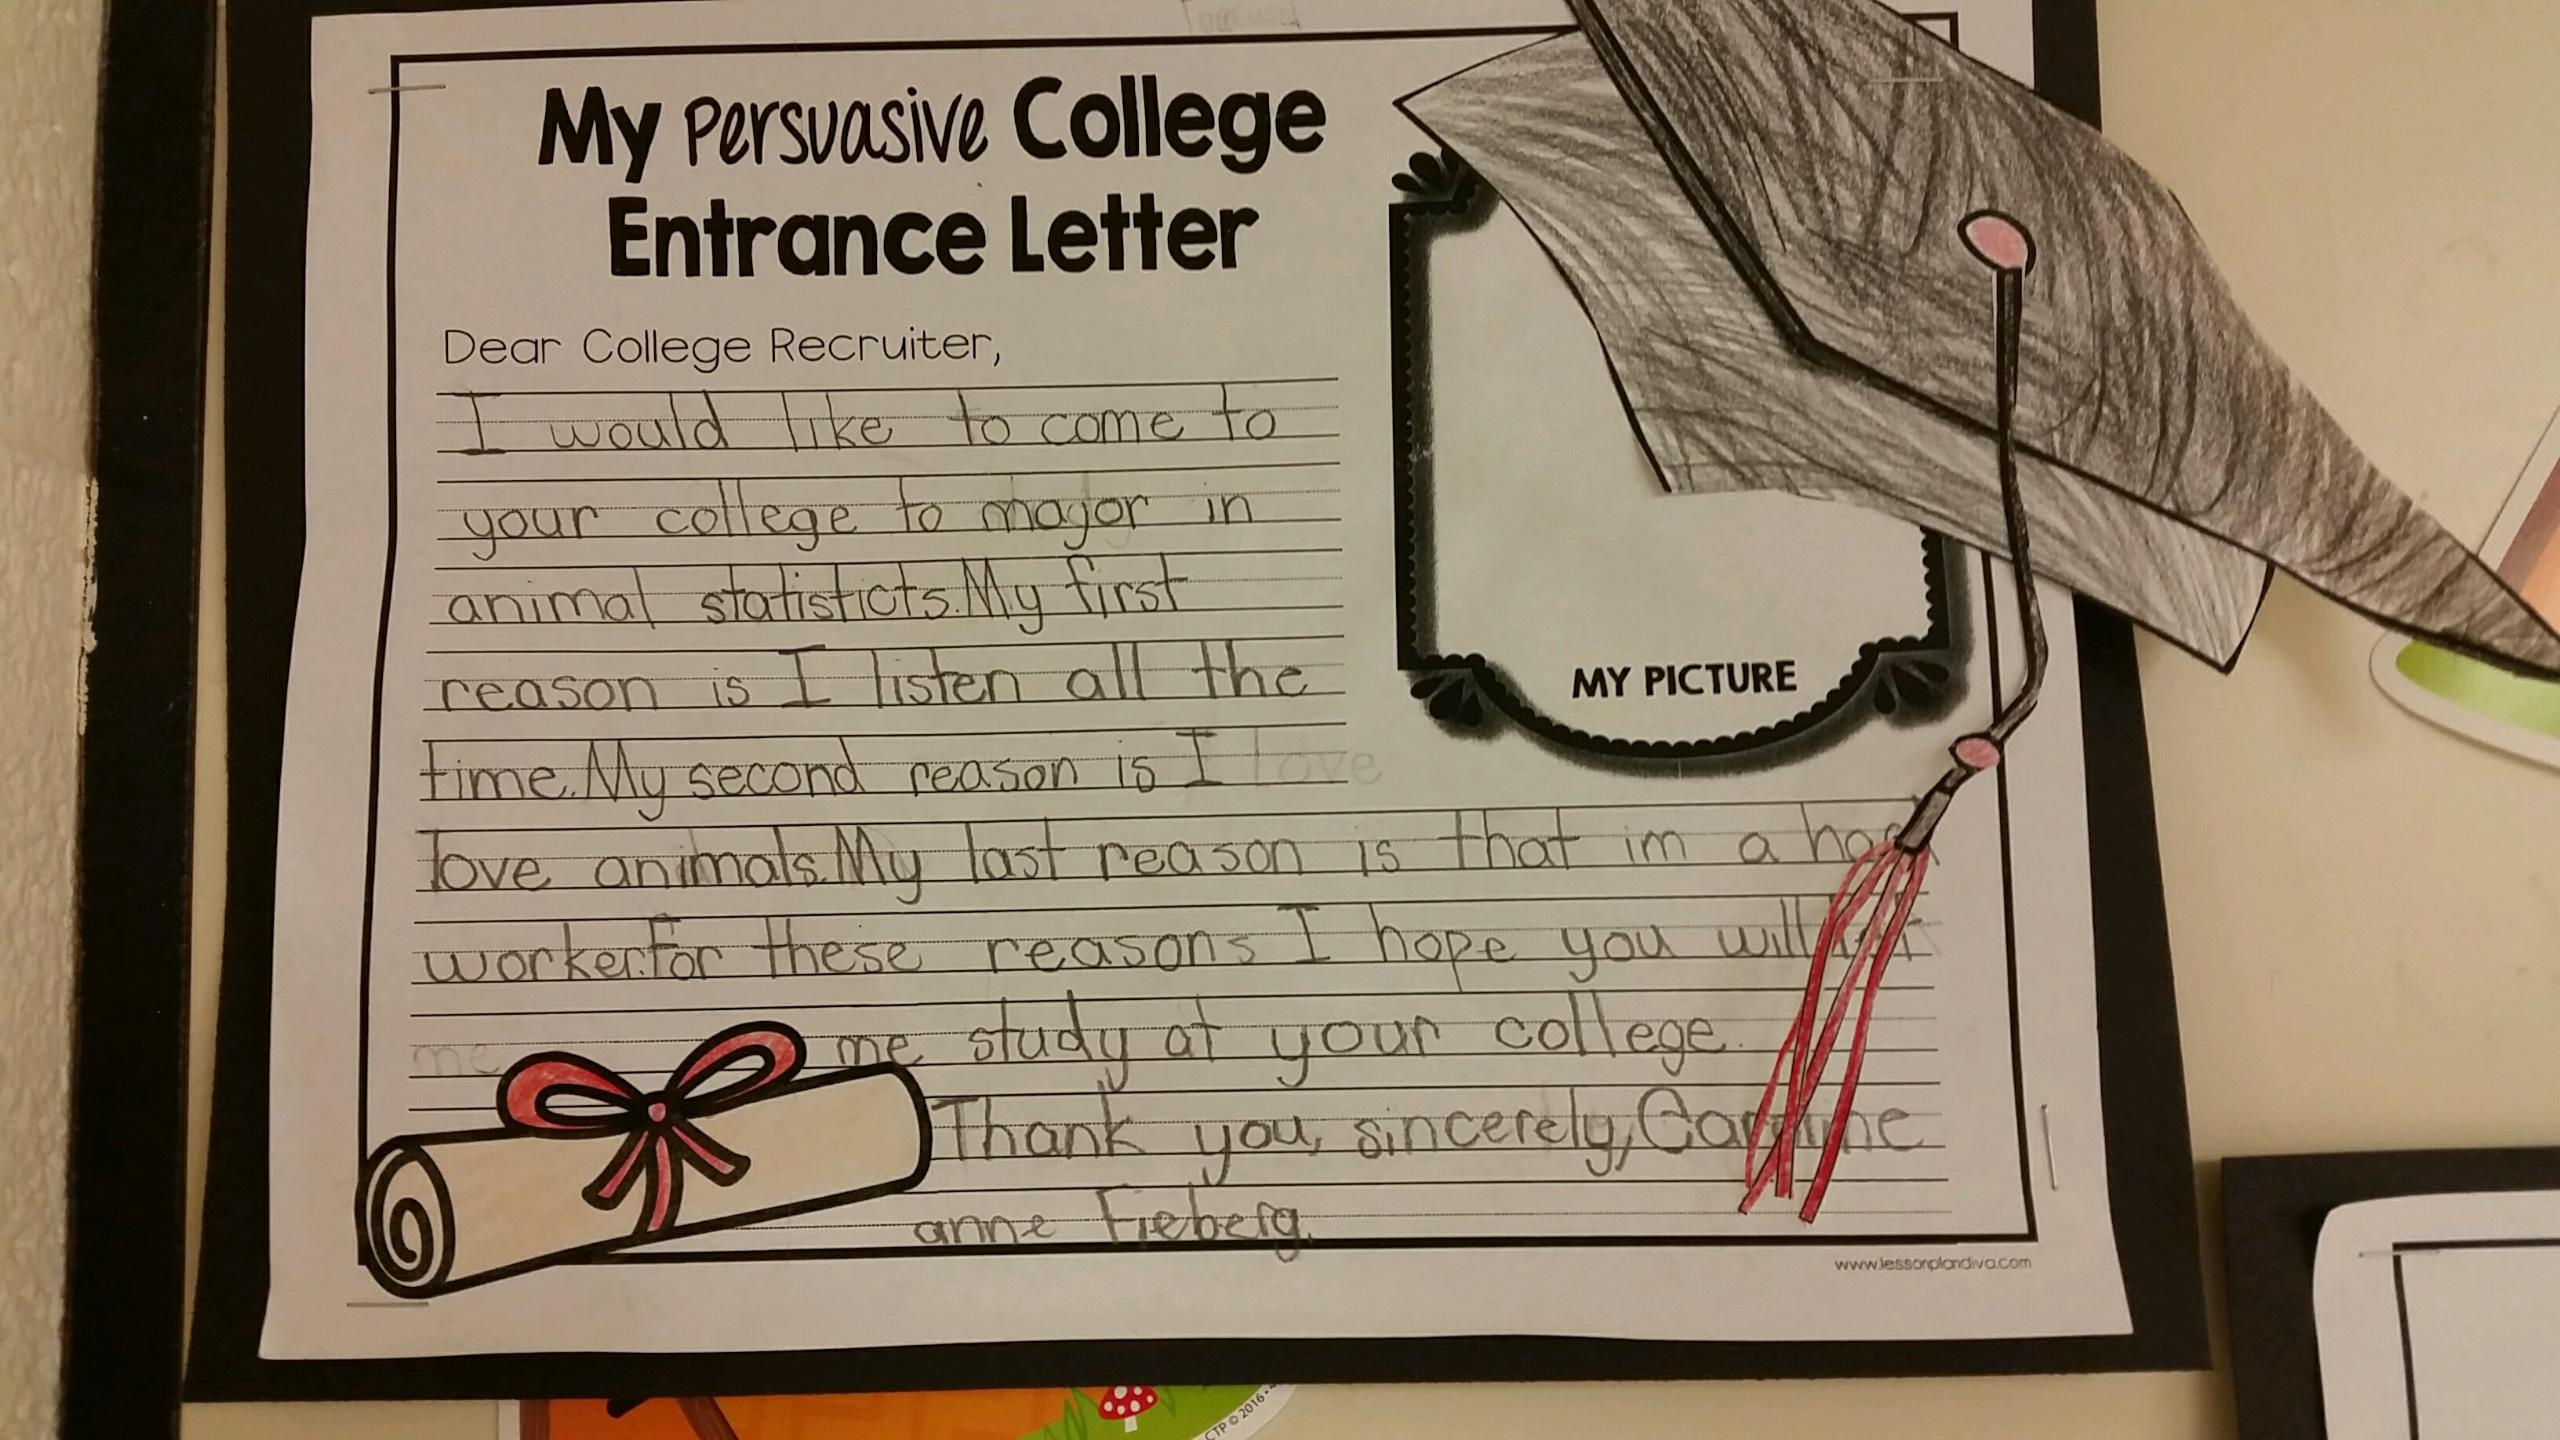 Caroline's college entrance letter